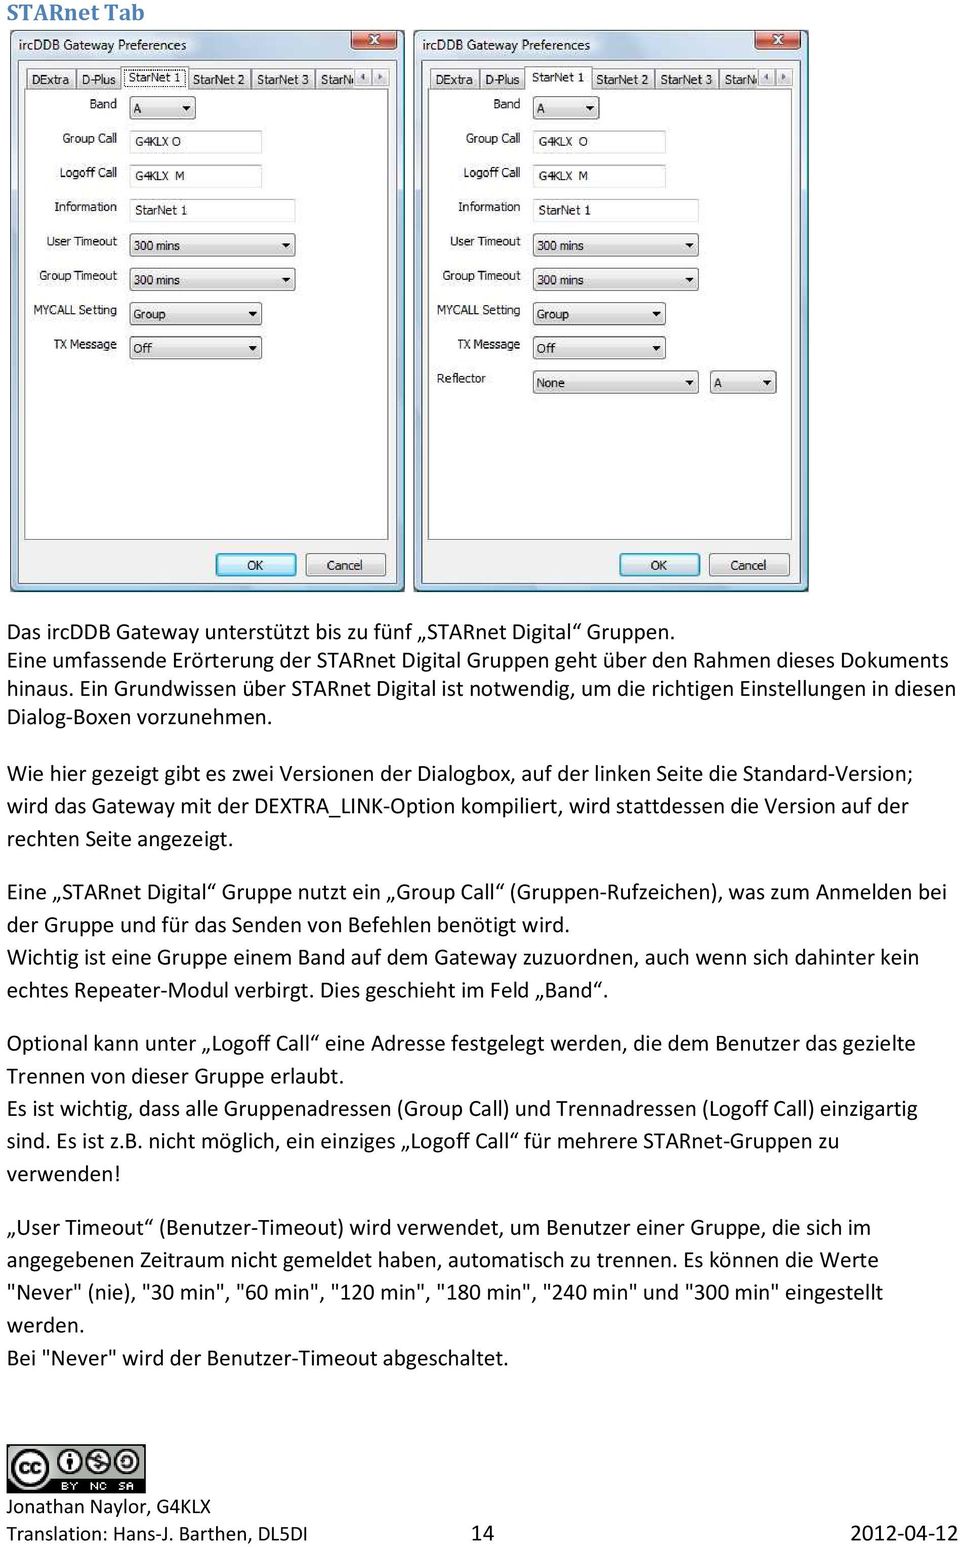 Wie hier gezeigt gibt es zwei Versionen der Dialogbox, auf der linken Seite die Standard-Version; wird das Gateway mit der DEXTRA_LINK-Option kompiliert, wird stattdessen die Version auf der rechten